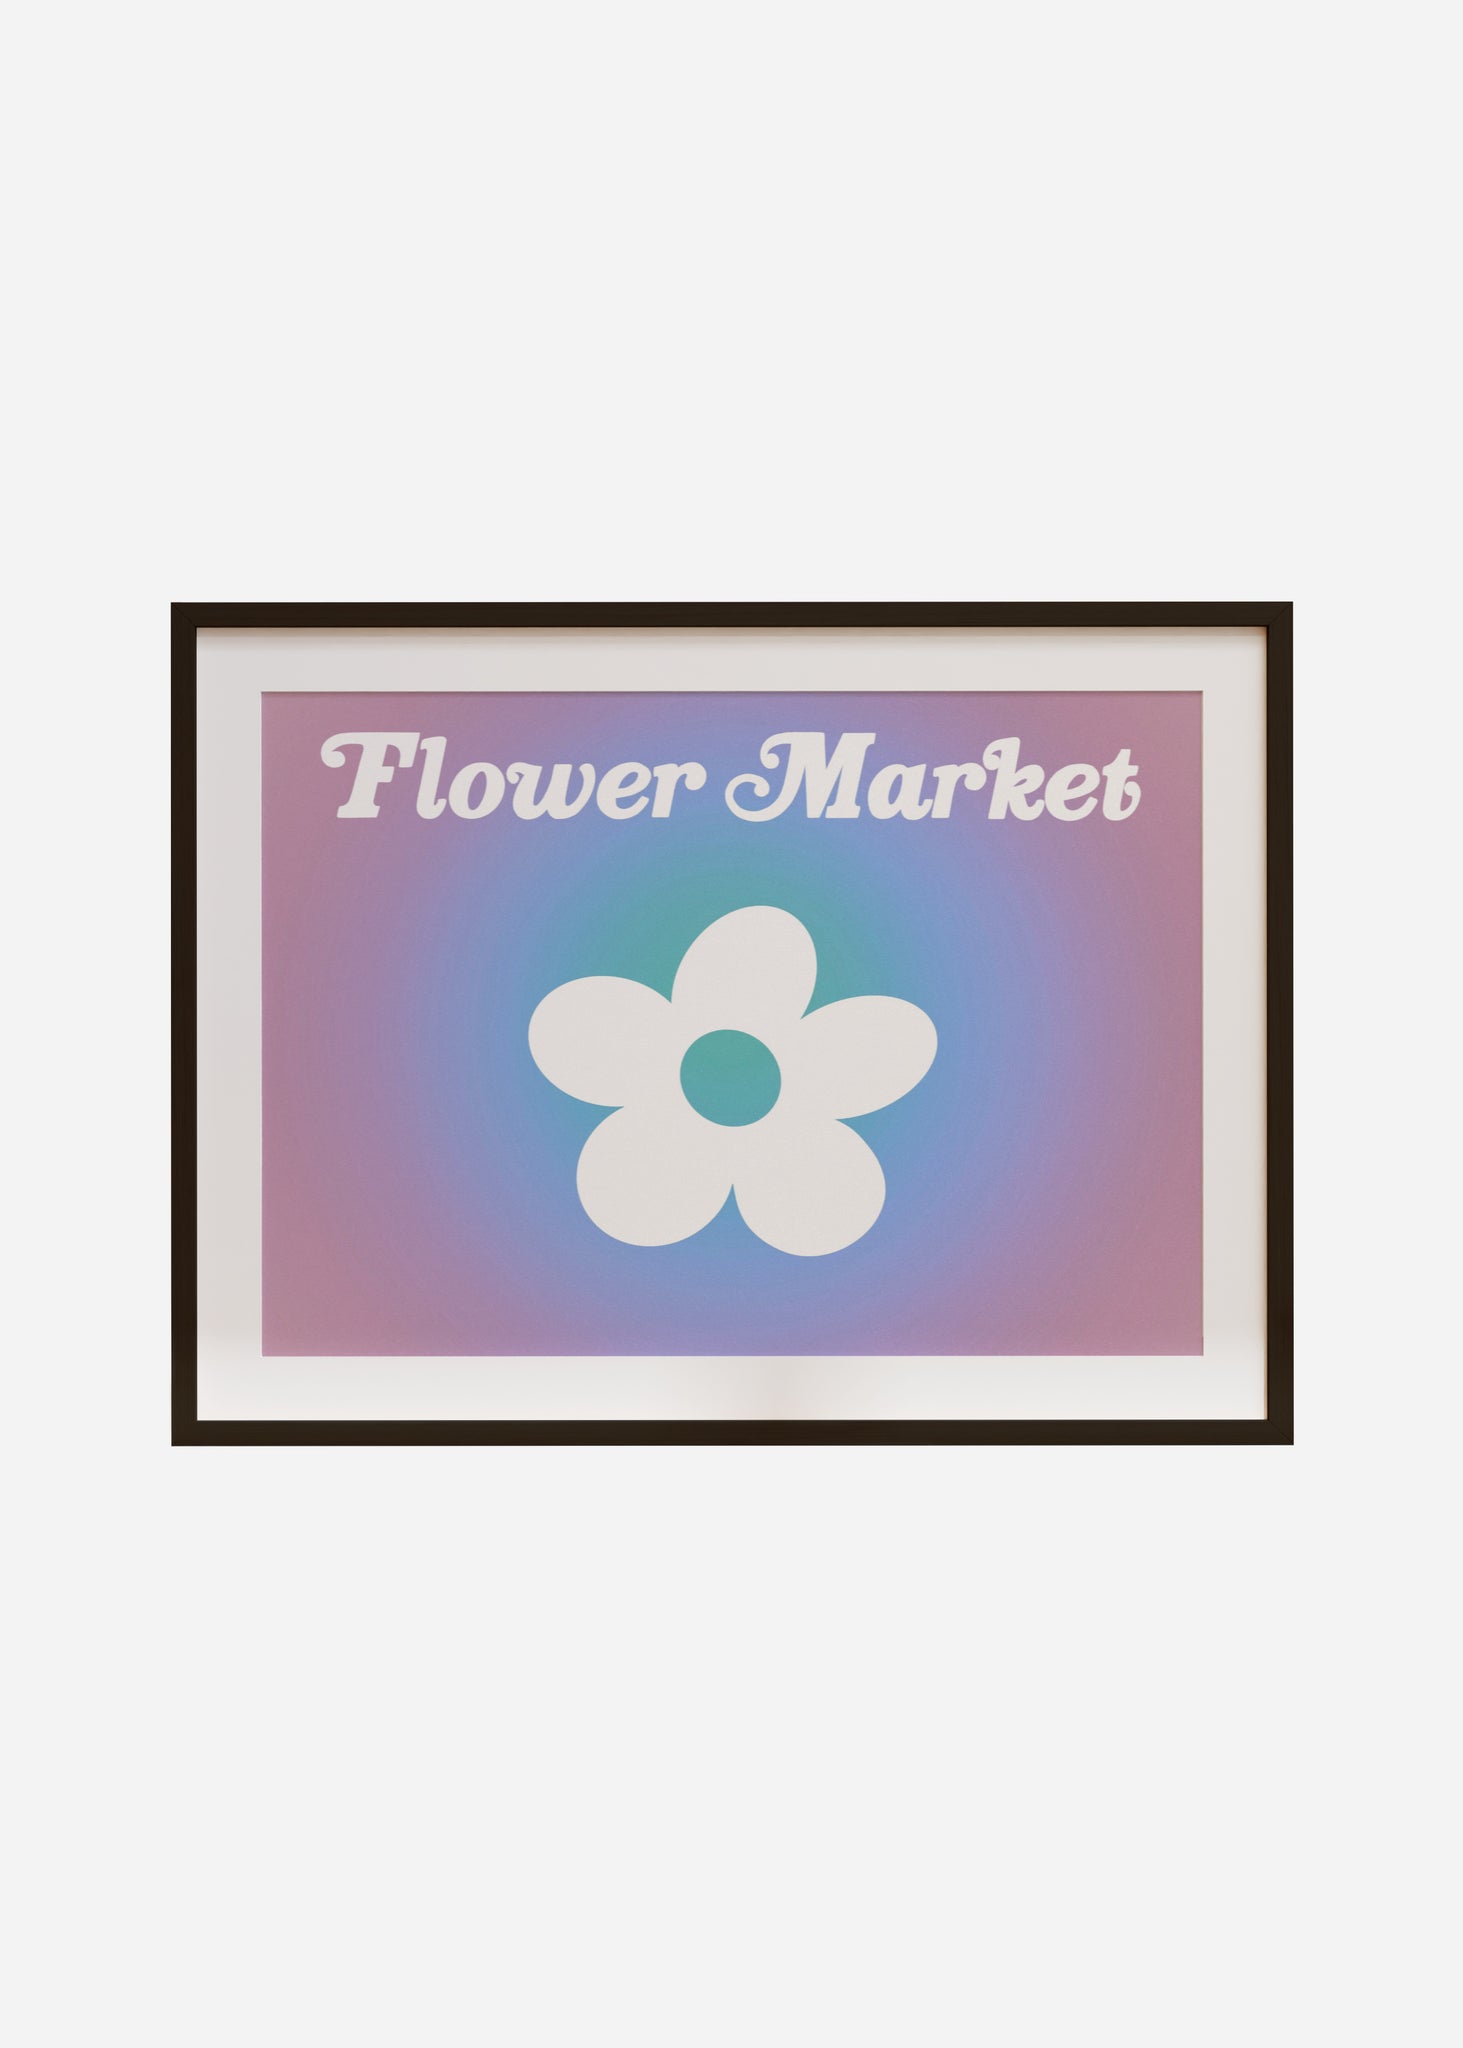 flower market sign Framed & Mounted Print